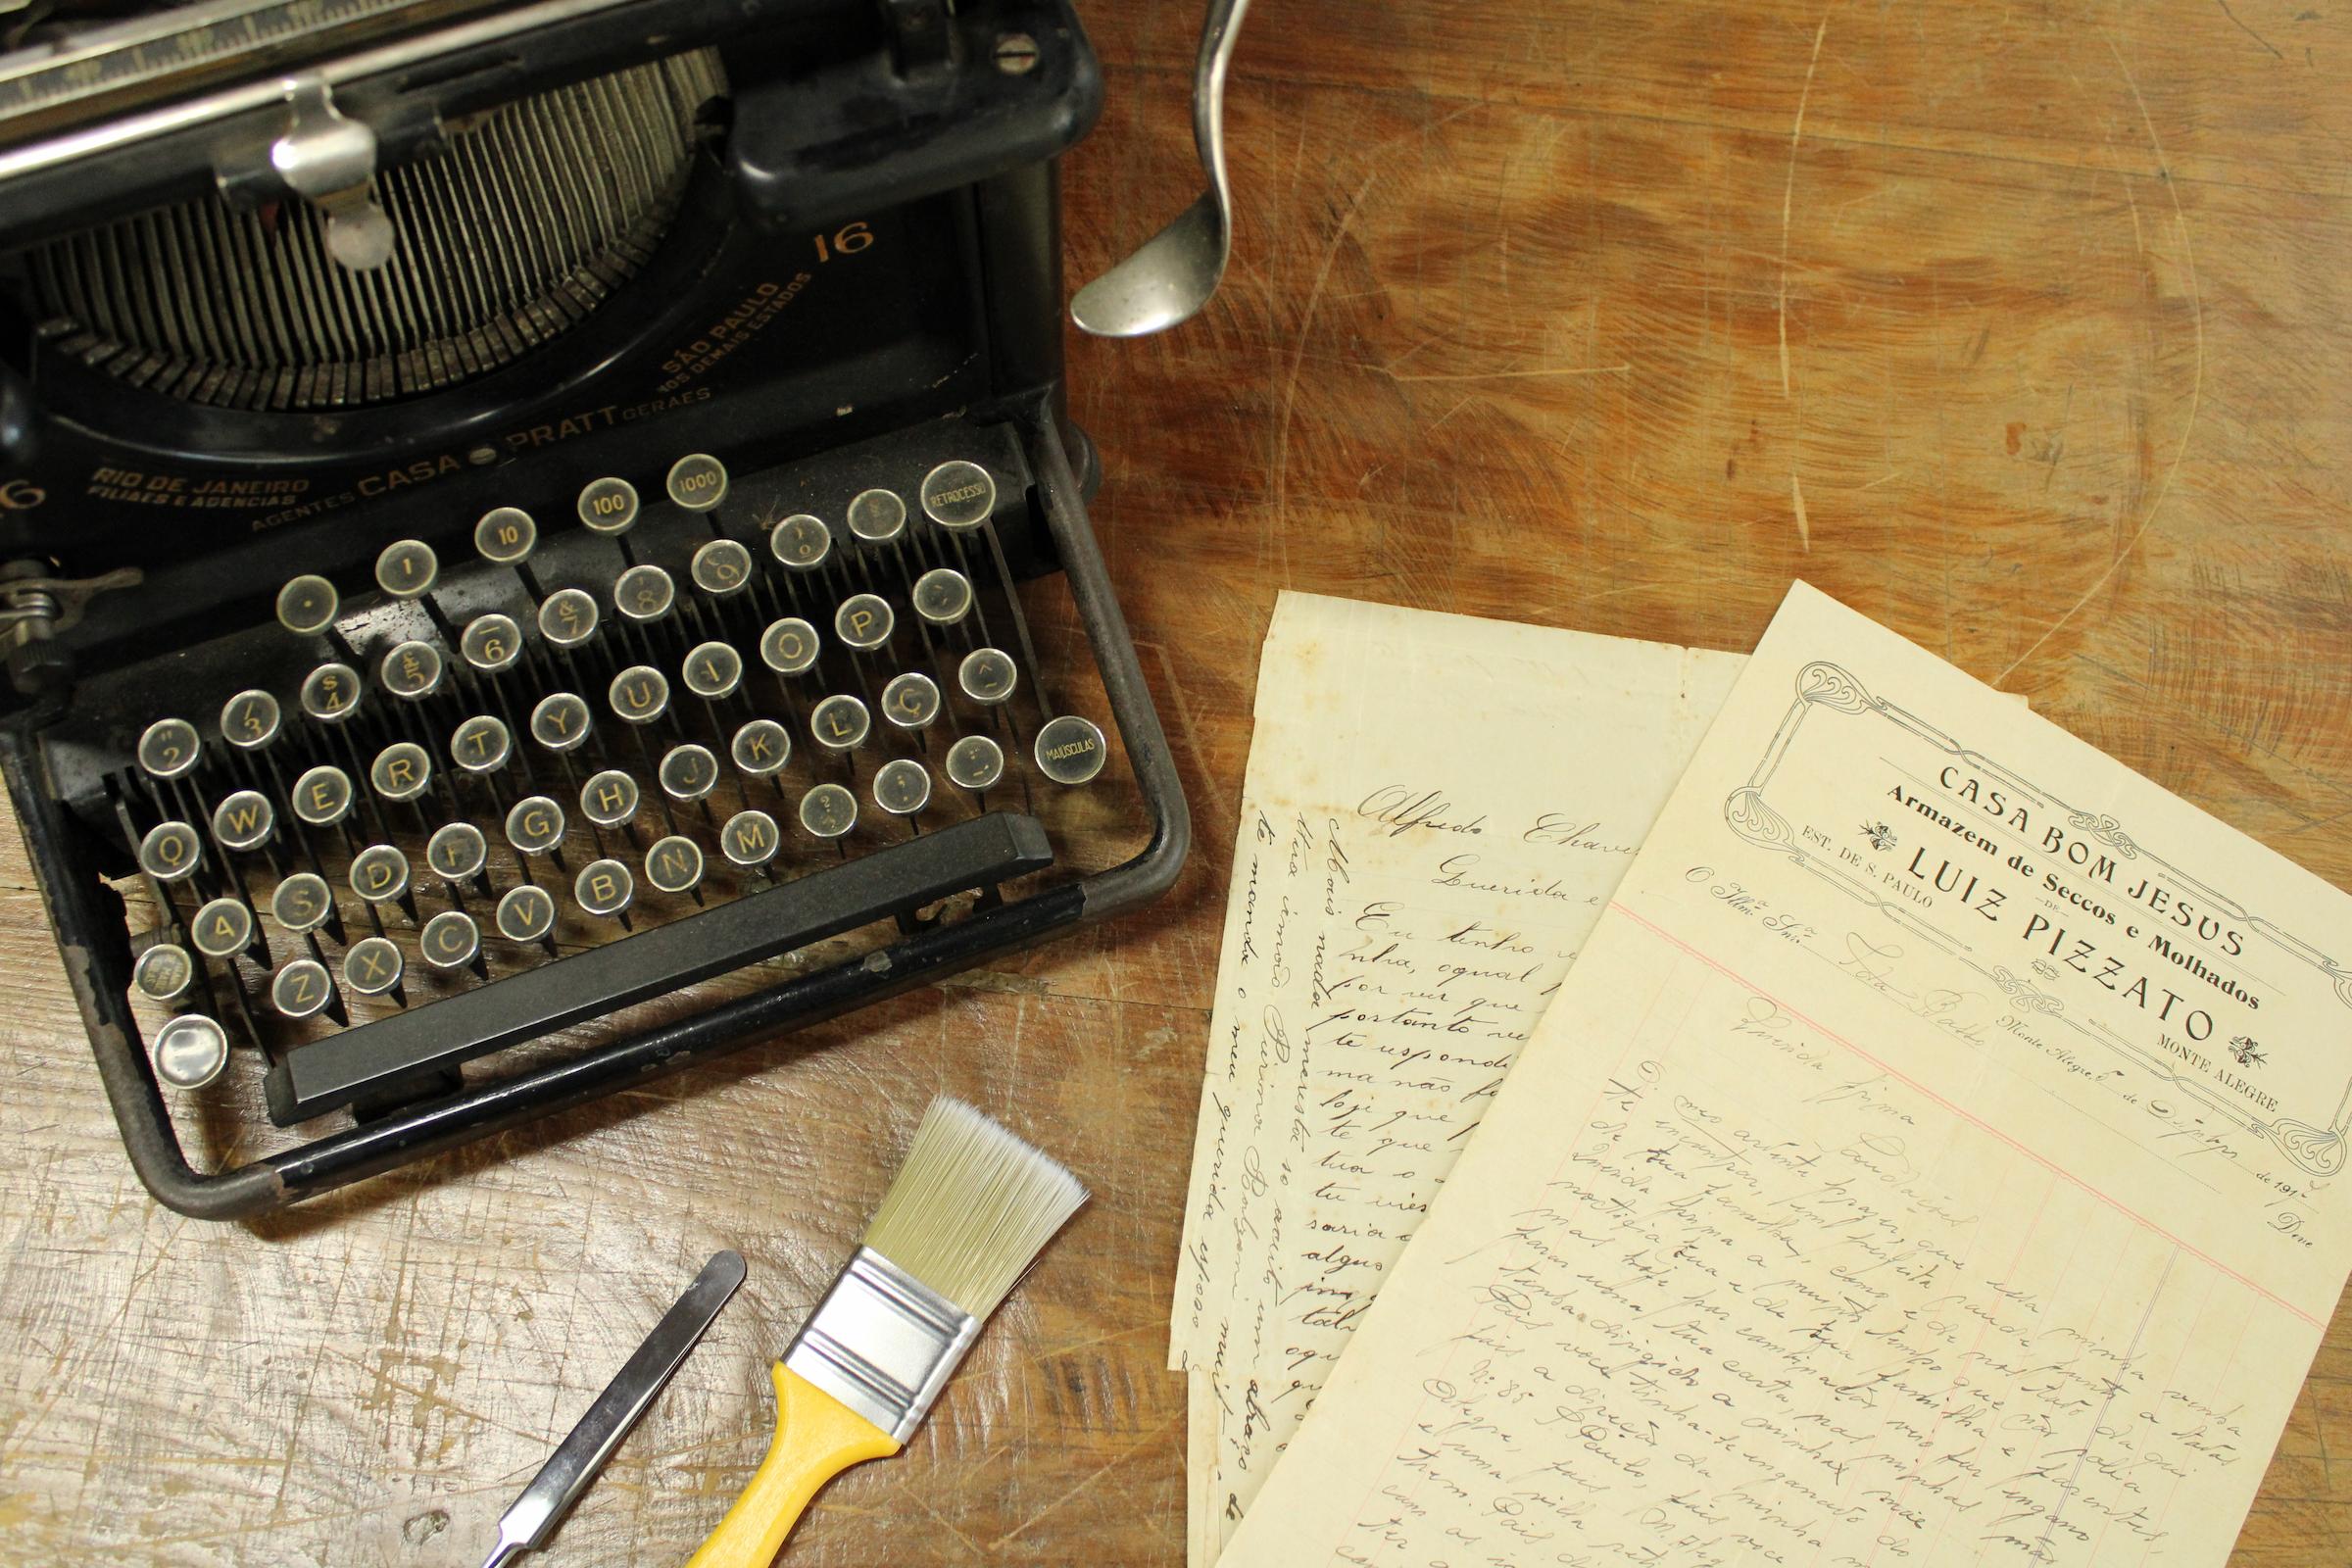 Foto de uma máquina de escrever antiga ao lado de alguns documentos antigos sobre uma mesa.